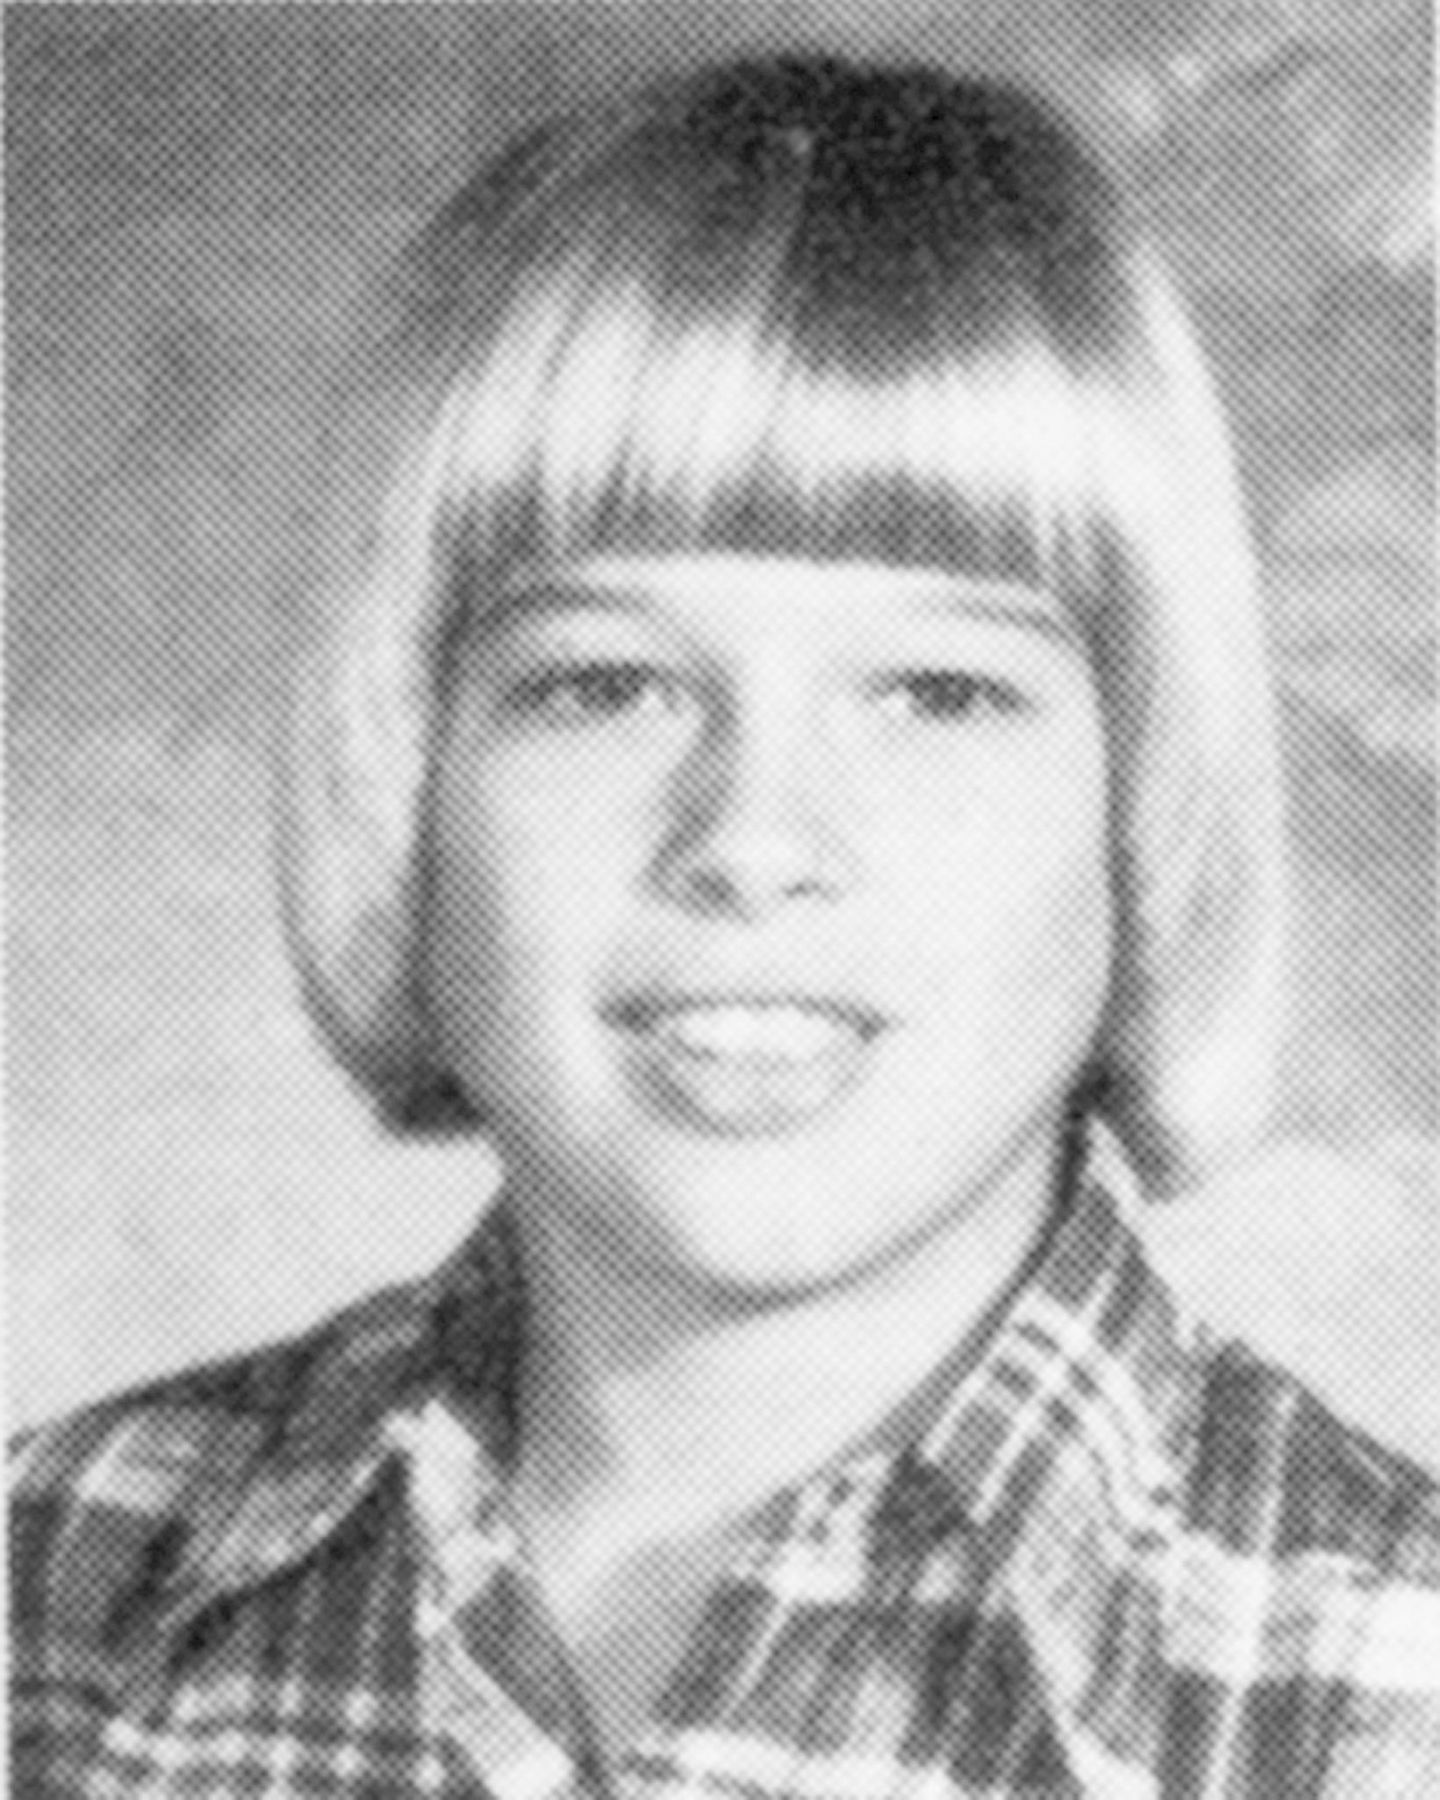 1978  Der junge Brad Pitt geht mit 15 in die Junior High School in Springfield, Missouri.